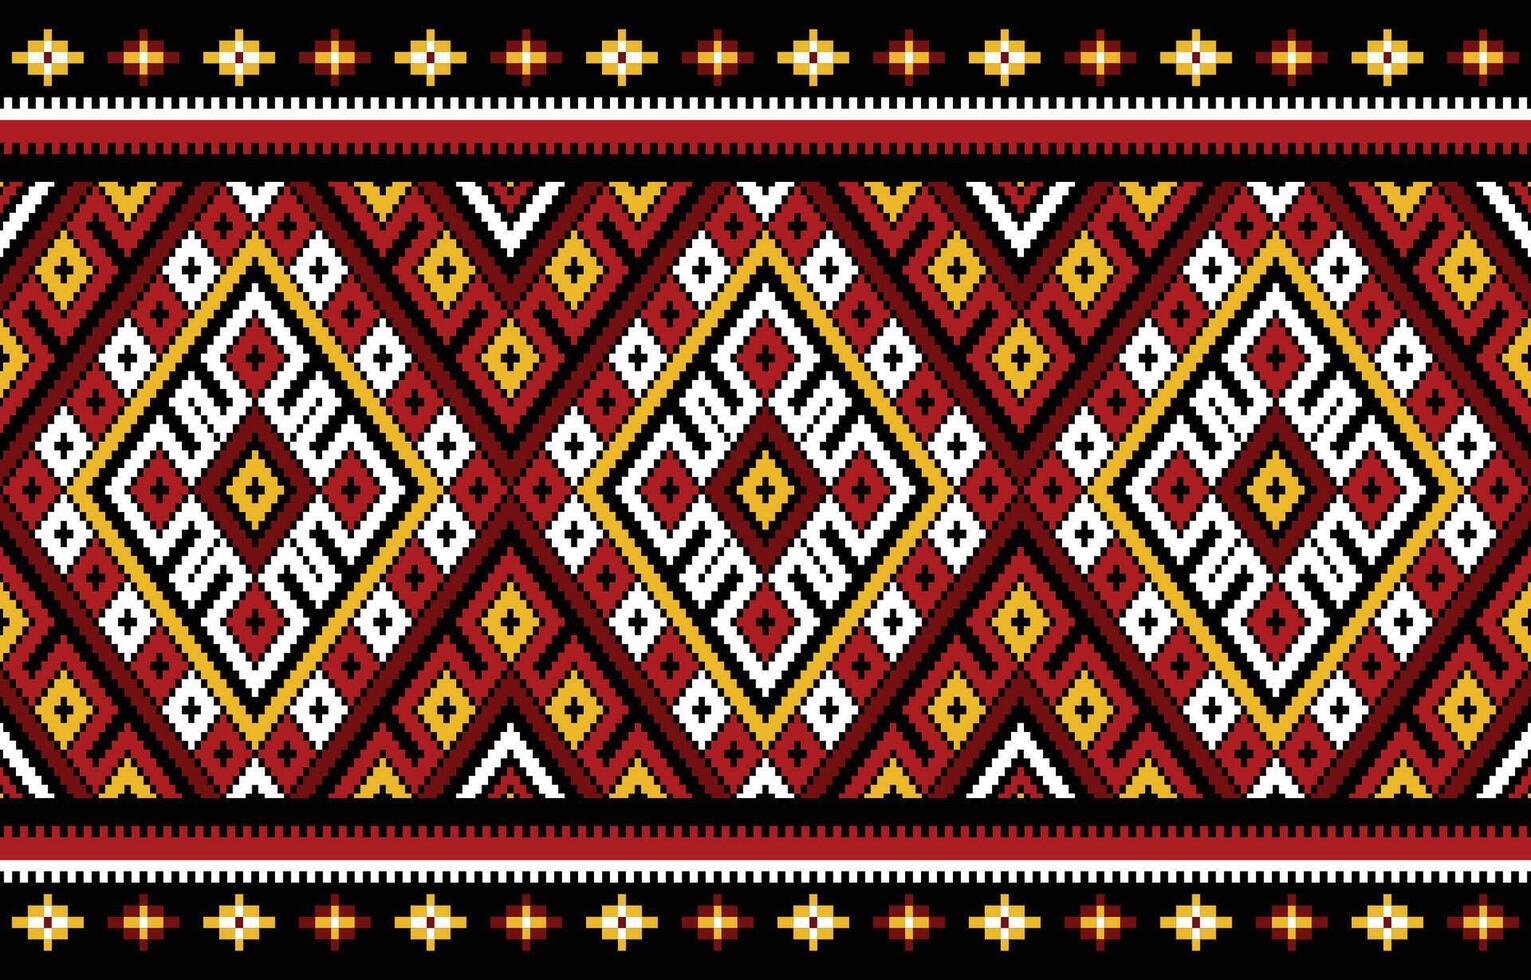 etnisch borduurwerk patroon een kleurrijk meetkundig ontwerp met vierkanten, driehoeken en diamanten doet denken aan van traditioneel borduurwerk. vector